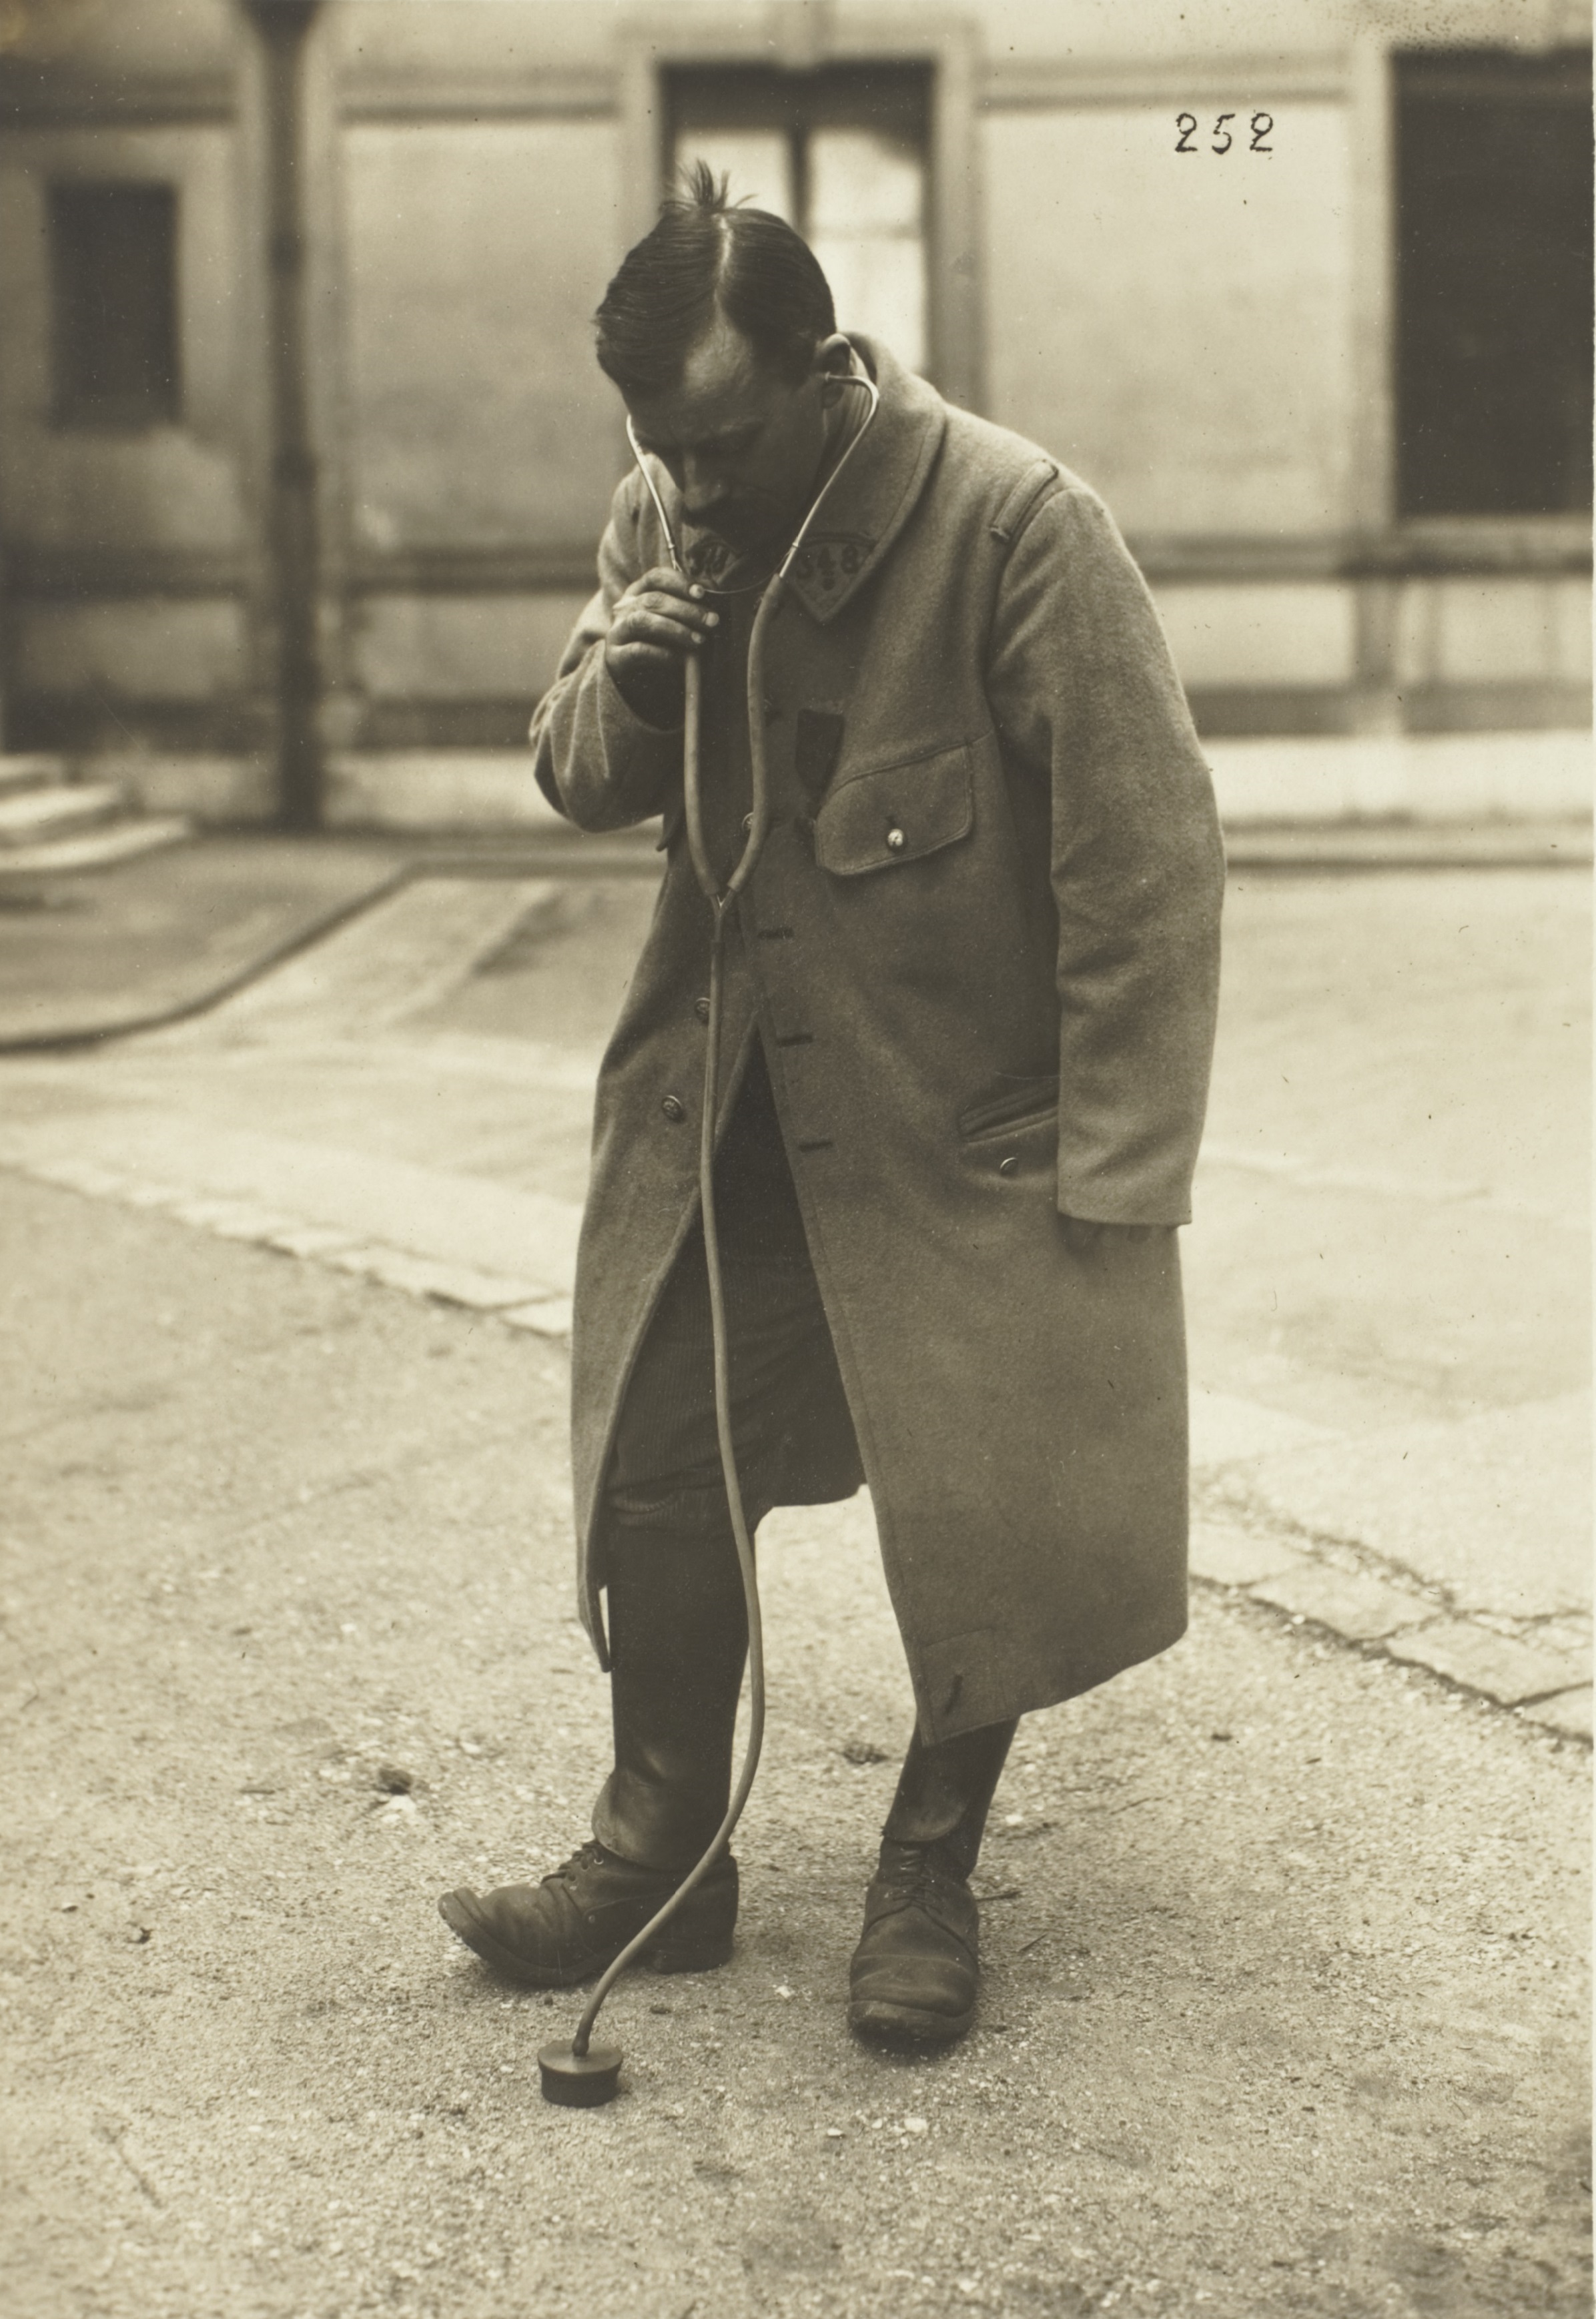 Disposition pratique des appareils pour l’écoute terrestre, 1917-1918, tirage gélatino-argentique, Archives nationales (France), 398AP/42